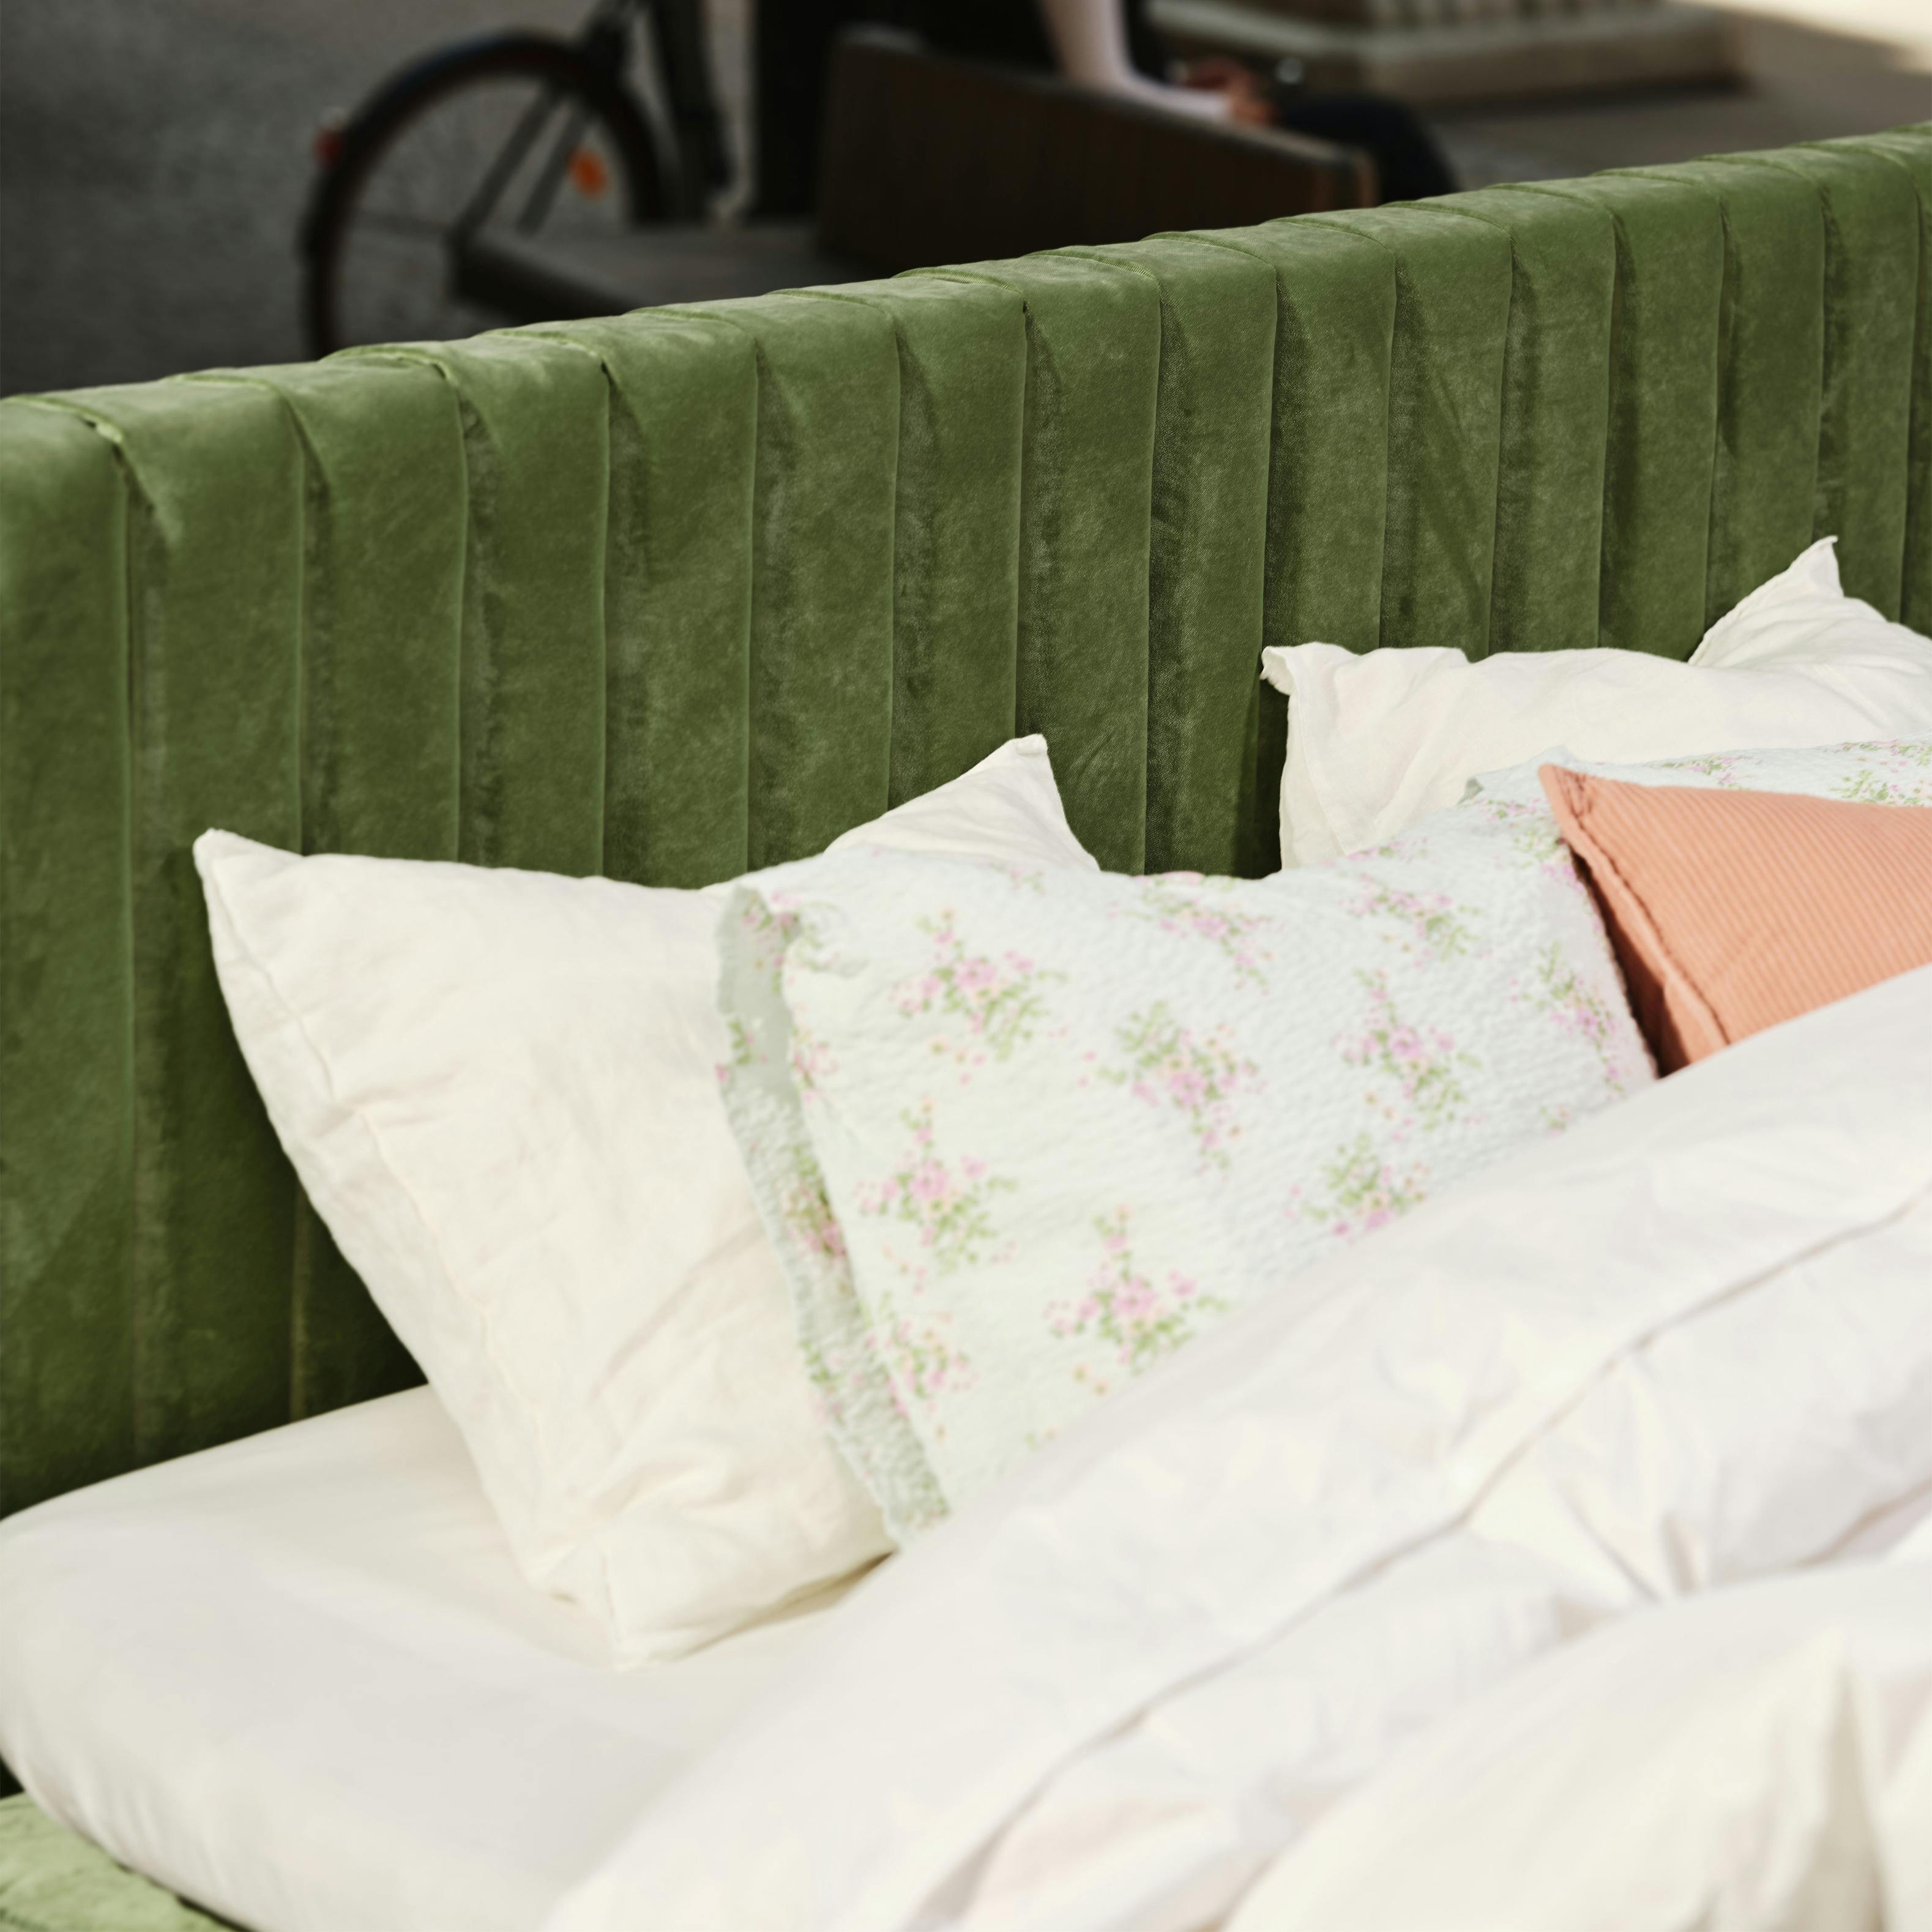 180cm bred, ribbad sänggavel klädd i en grön polyestersammet. 